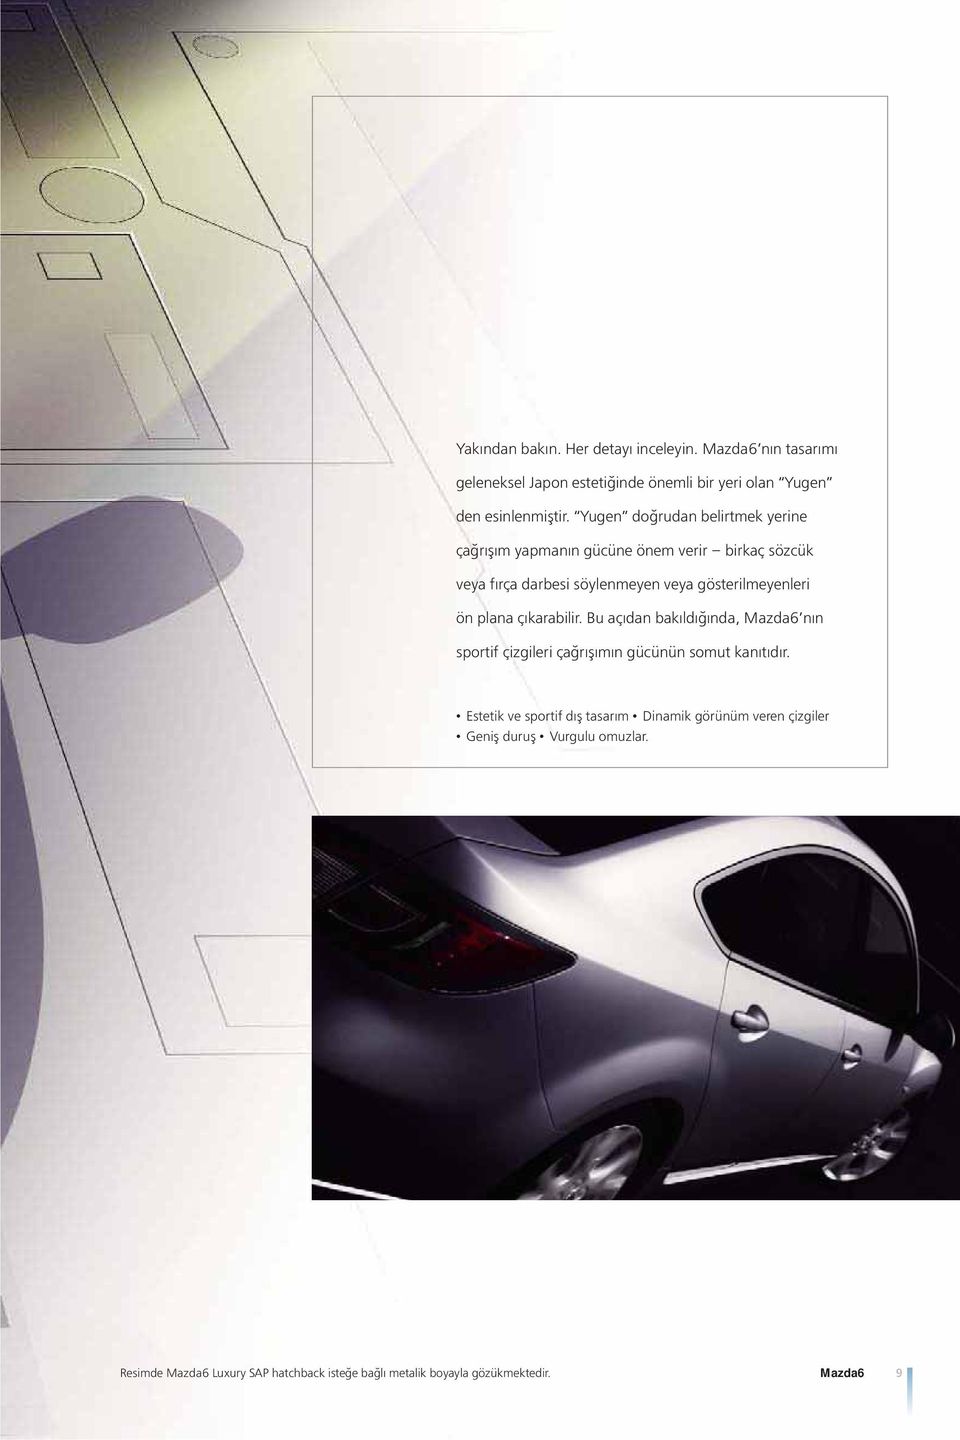 plana çıkarabilir. Bu açıdan bakıldığında, Mazda6 nın sportif çizgileri çağrışımın gücünün somut kanıtıdır.